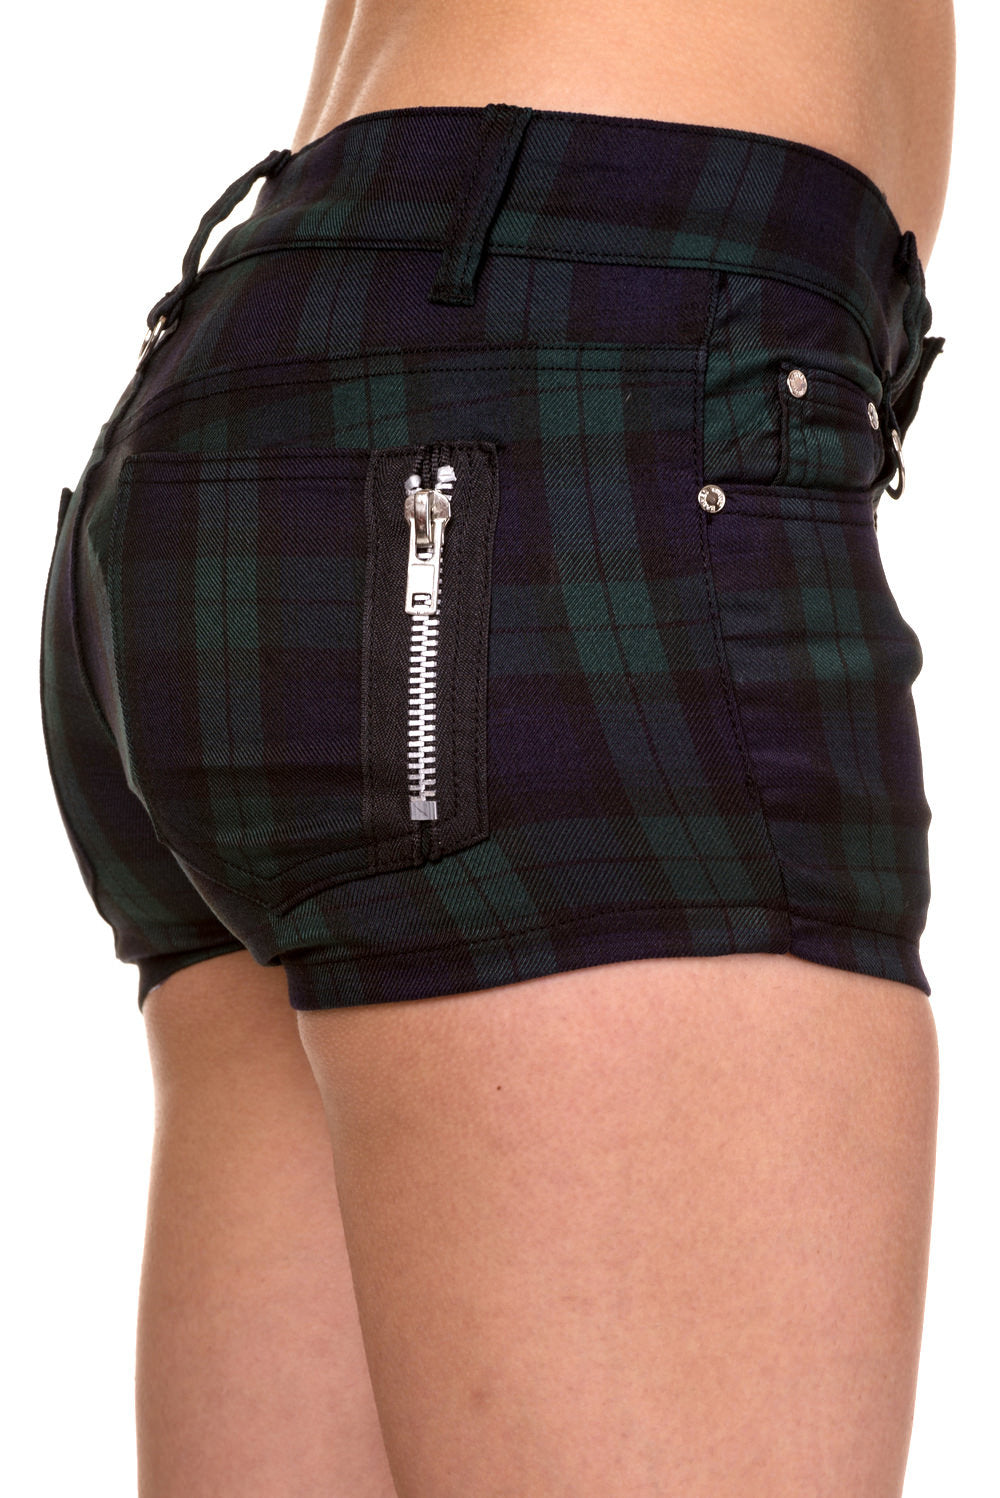 Banned Alternative Tartan Shorts